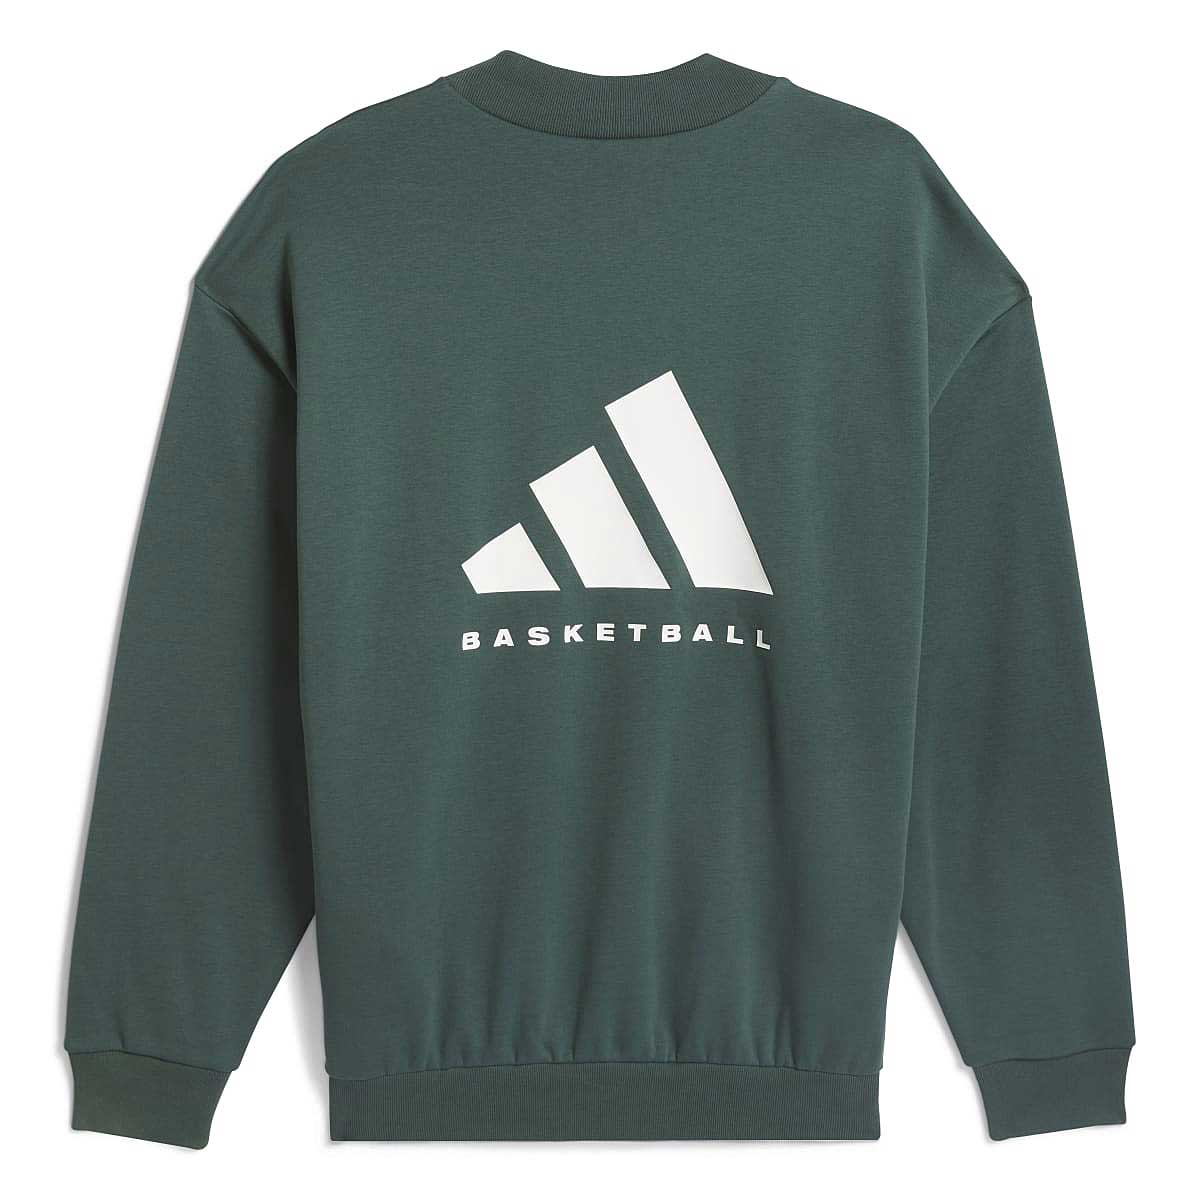 Image of Adidas Basketball Sweatshirt, Green